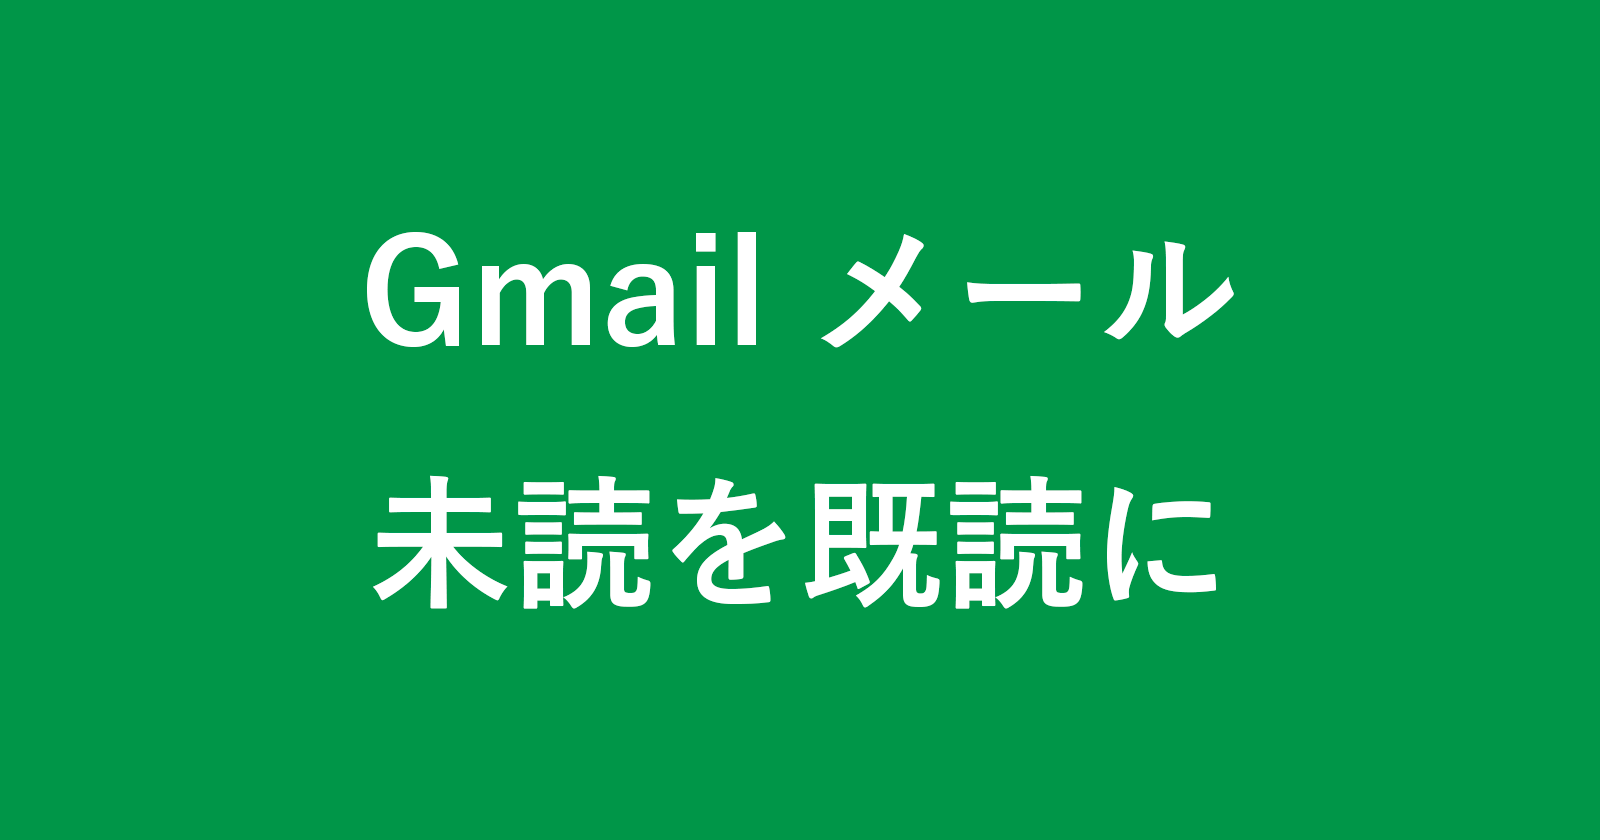 gmail read all unread